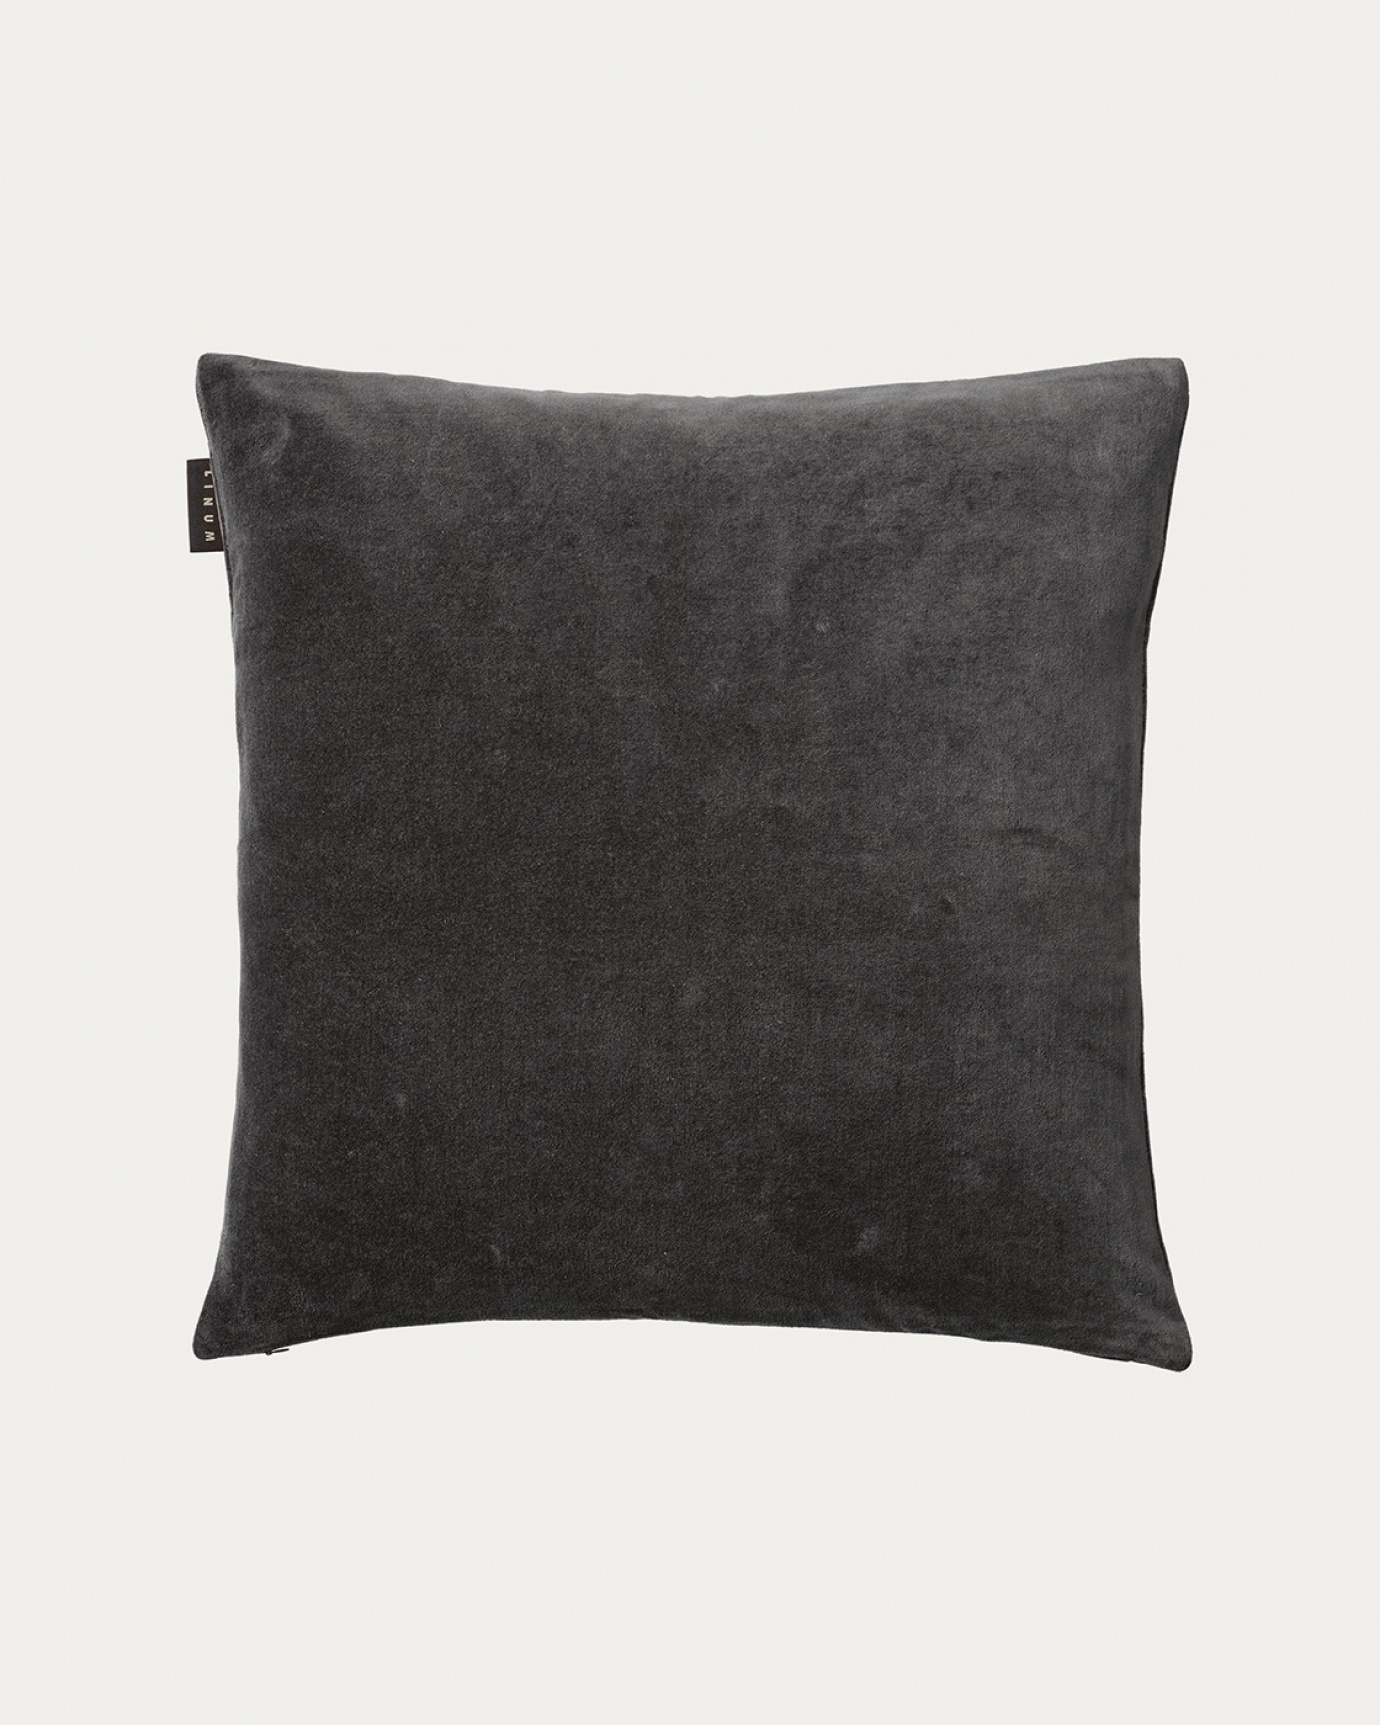 Produktbild mörk kolgrå PAOLO kuddfodral av mjuk bomullssammet från LINUM DESIGN. Storlek 50x50 cm.